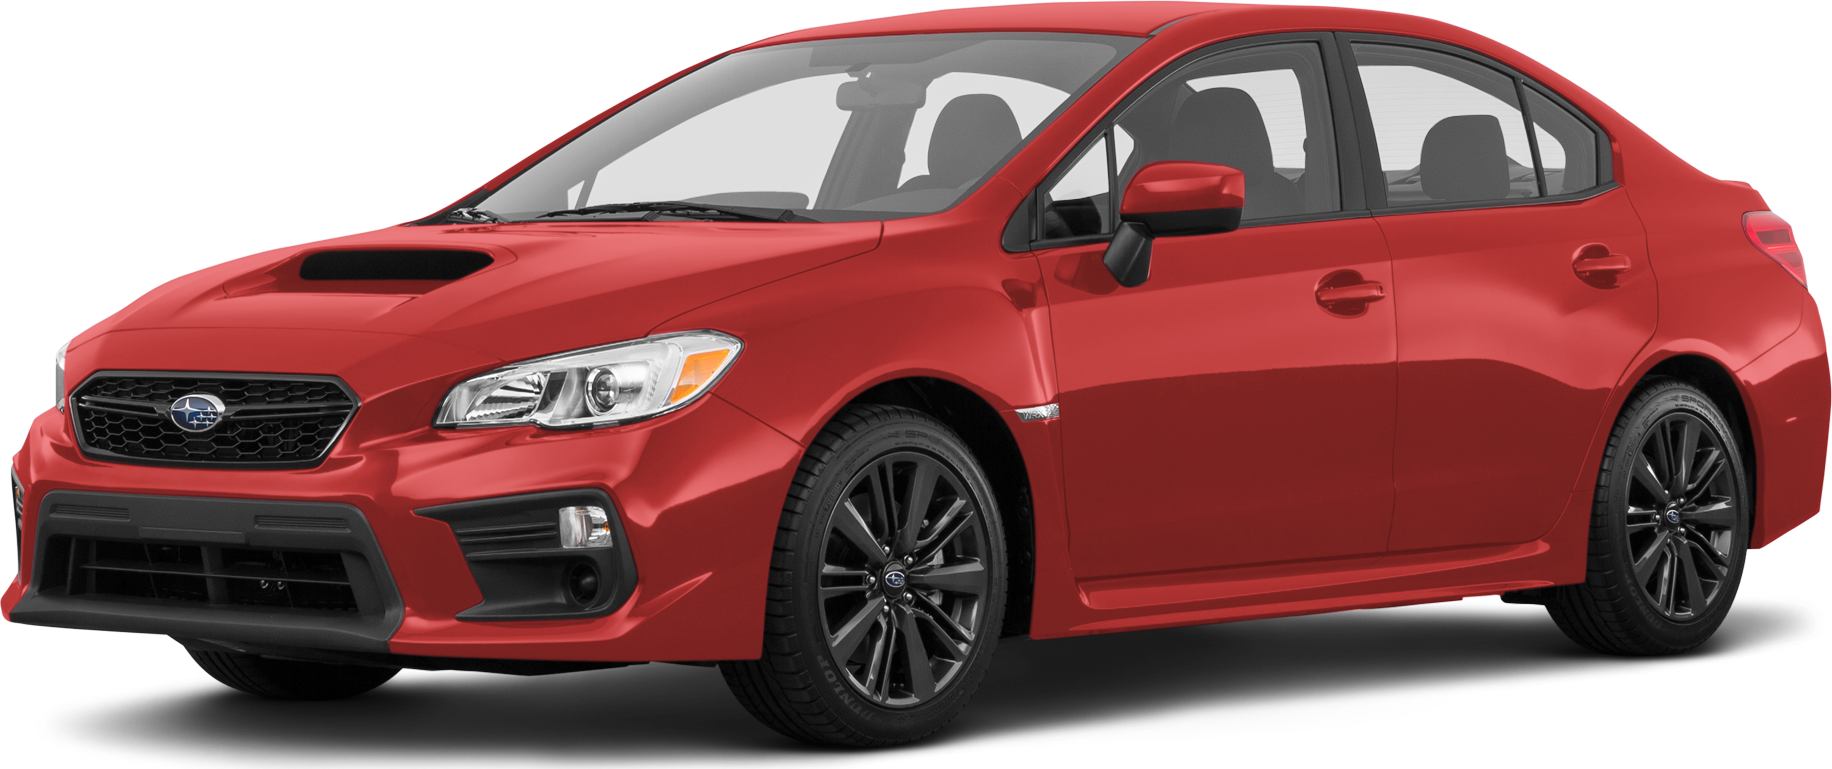 2018 Subaru WRX Price, Value, Ratings & Reviews